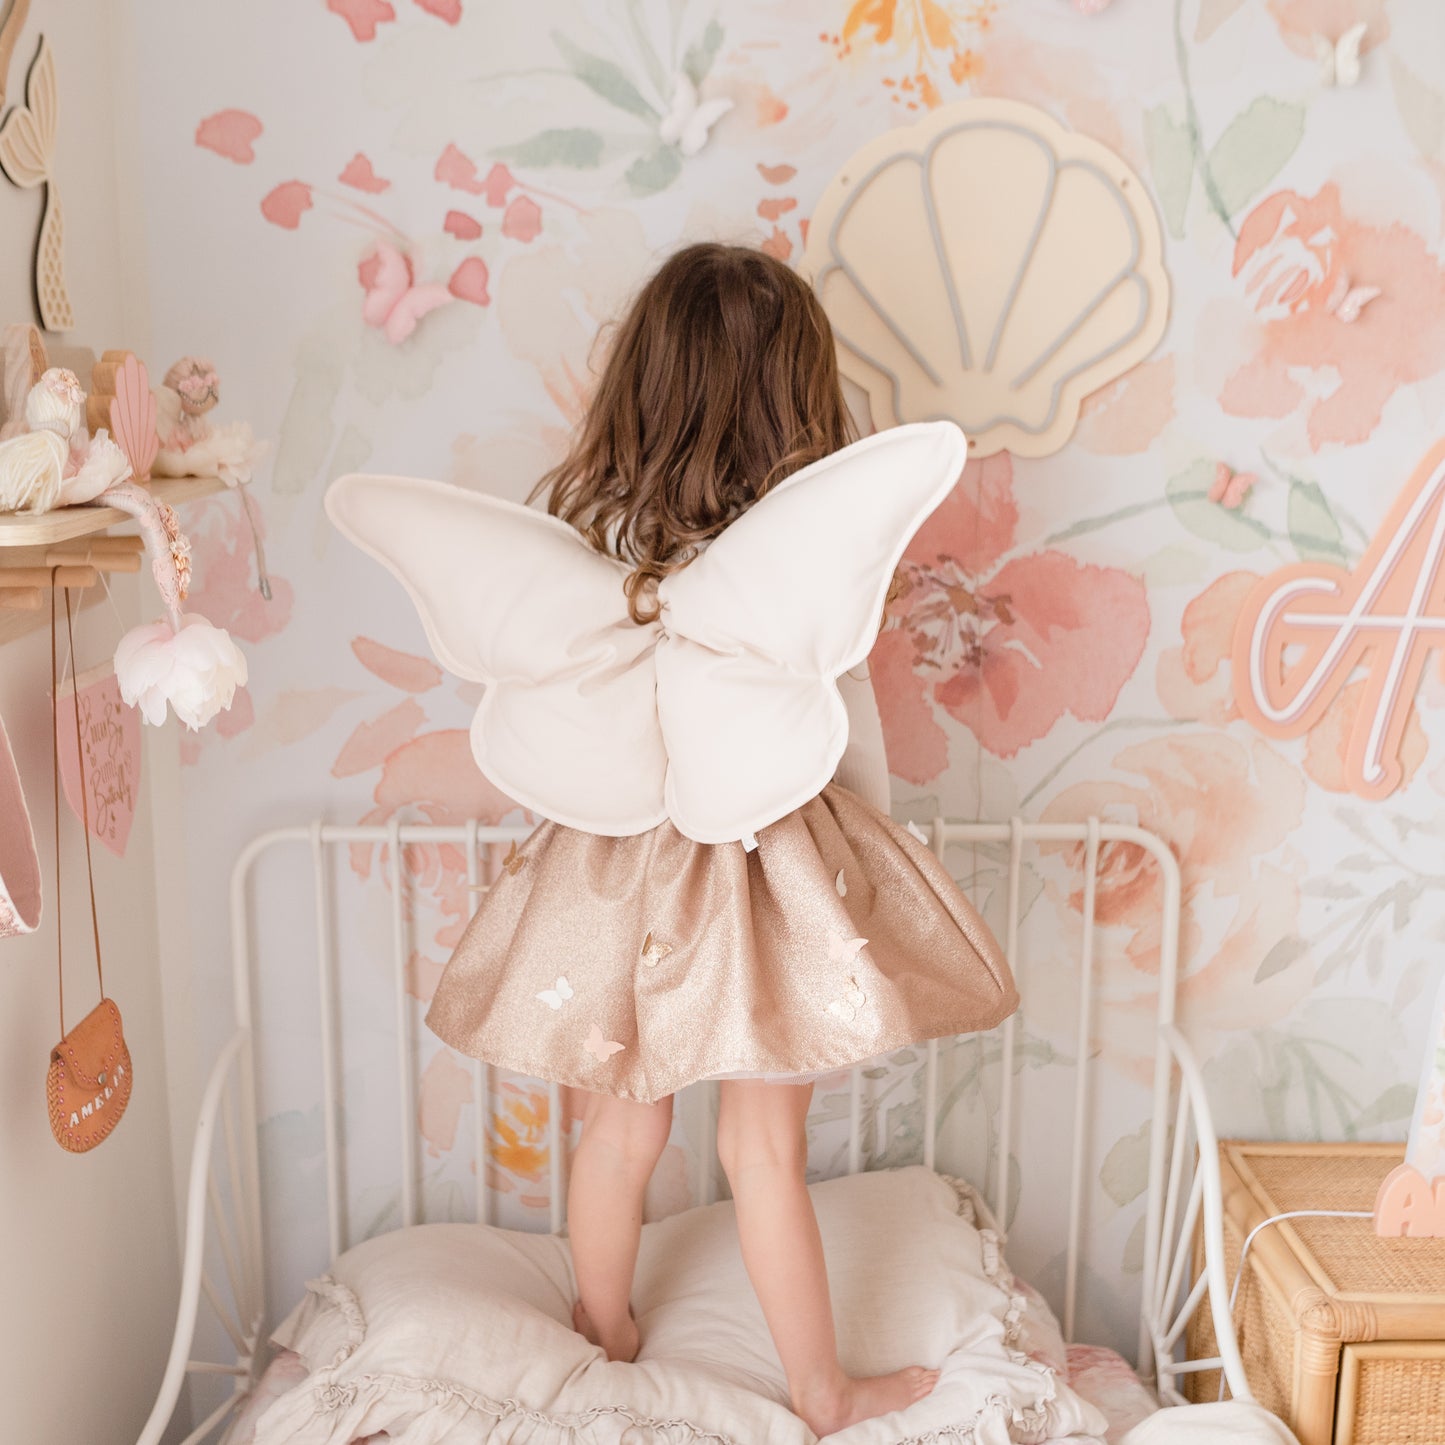 Butterfly Wings © - Beige Cotton